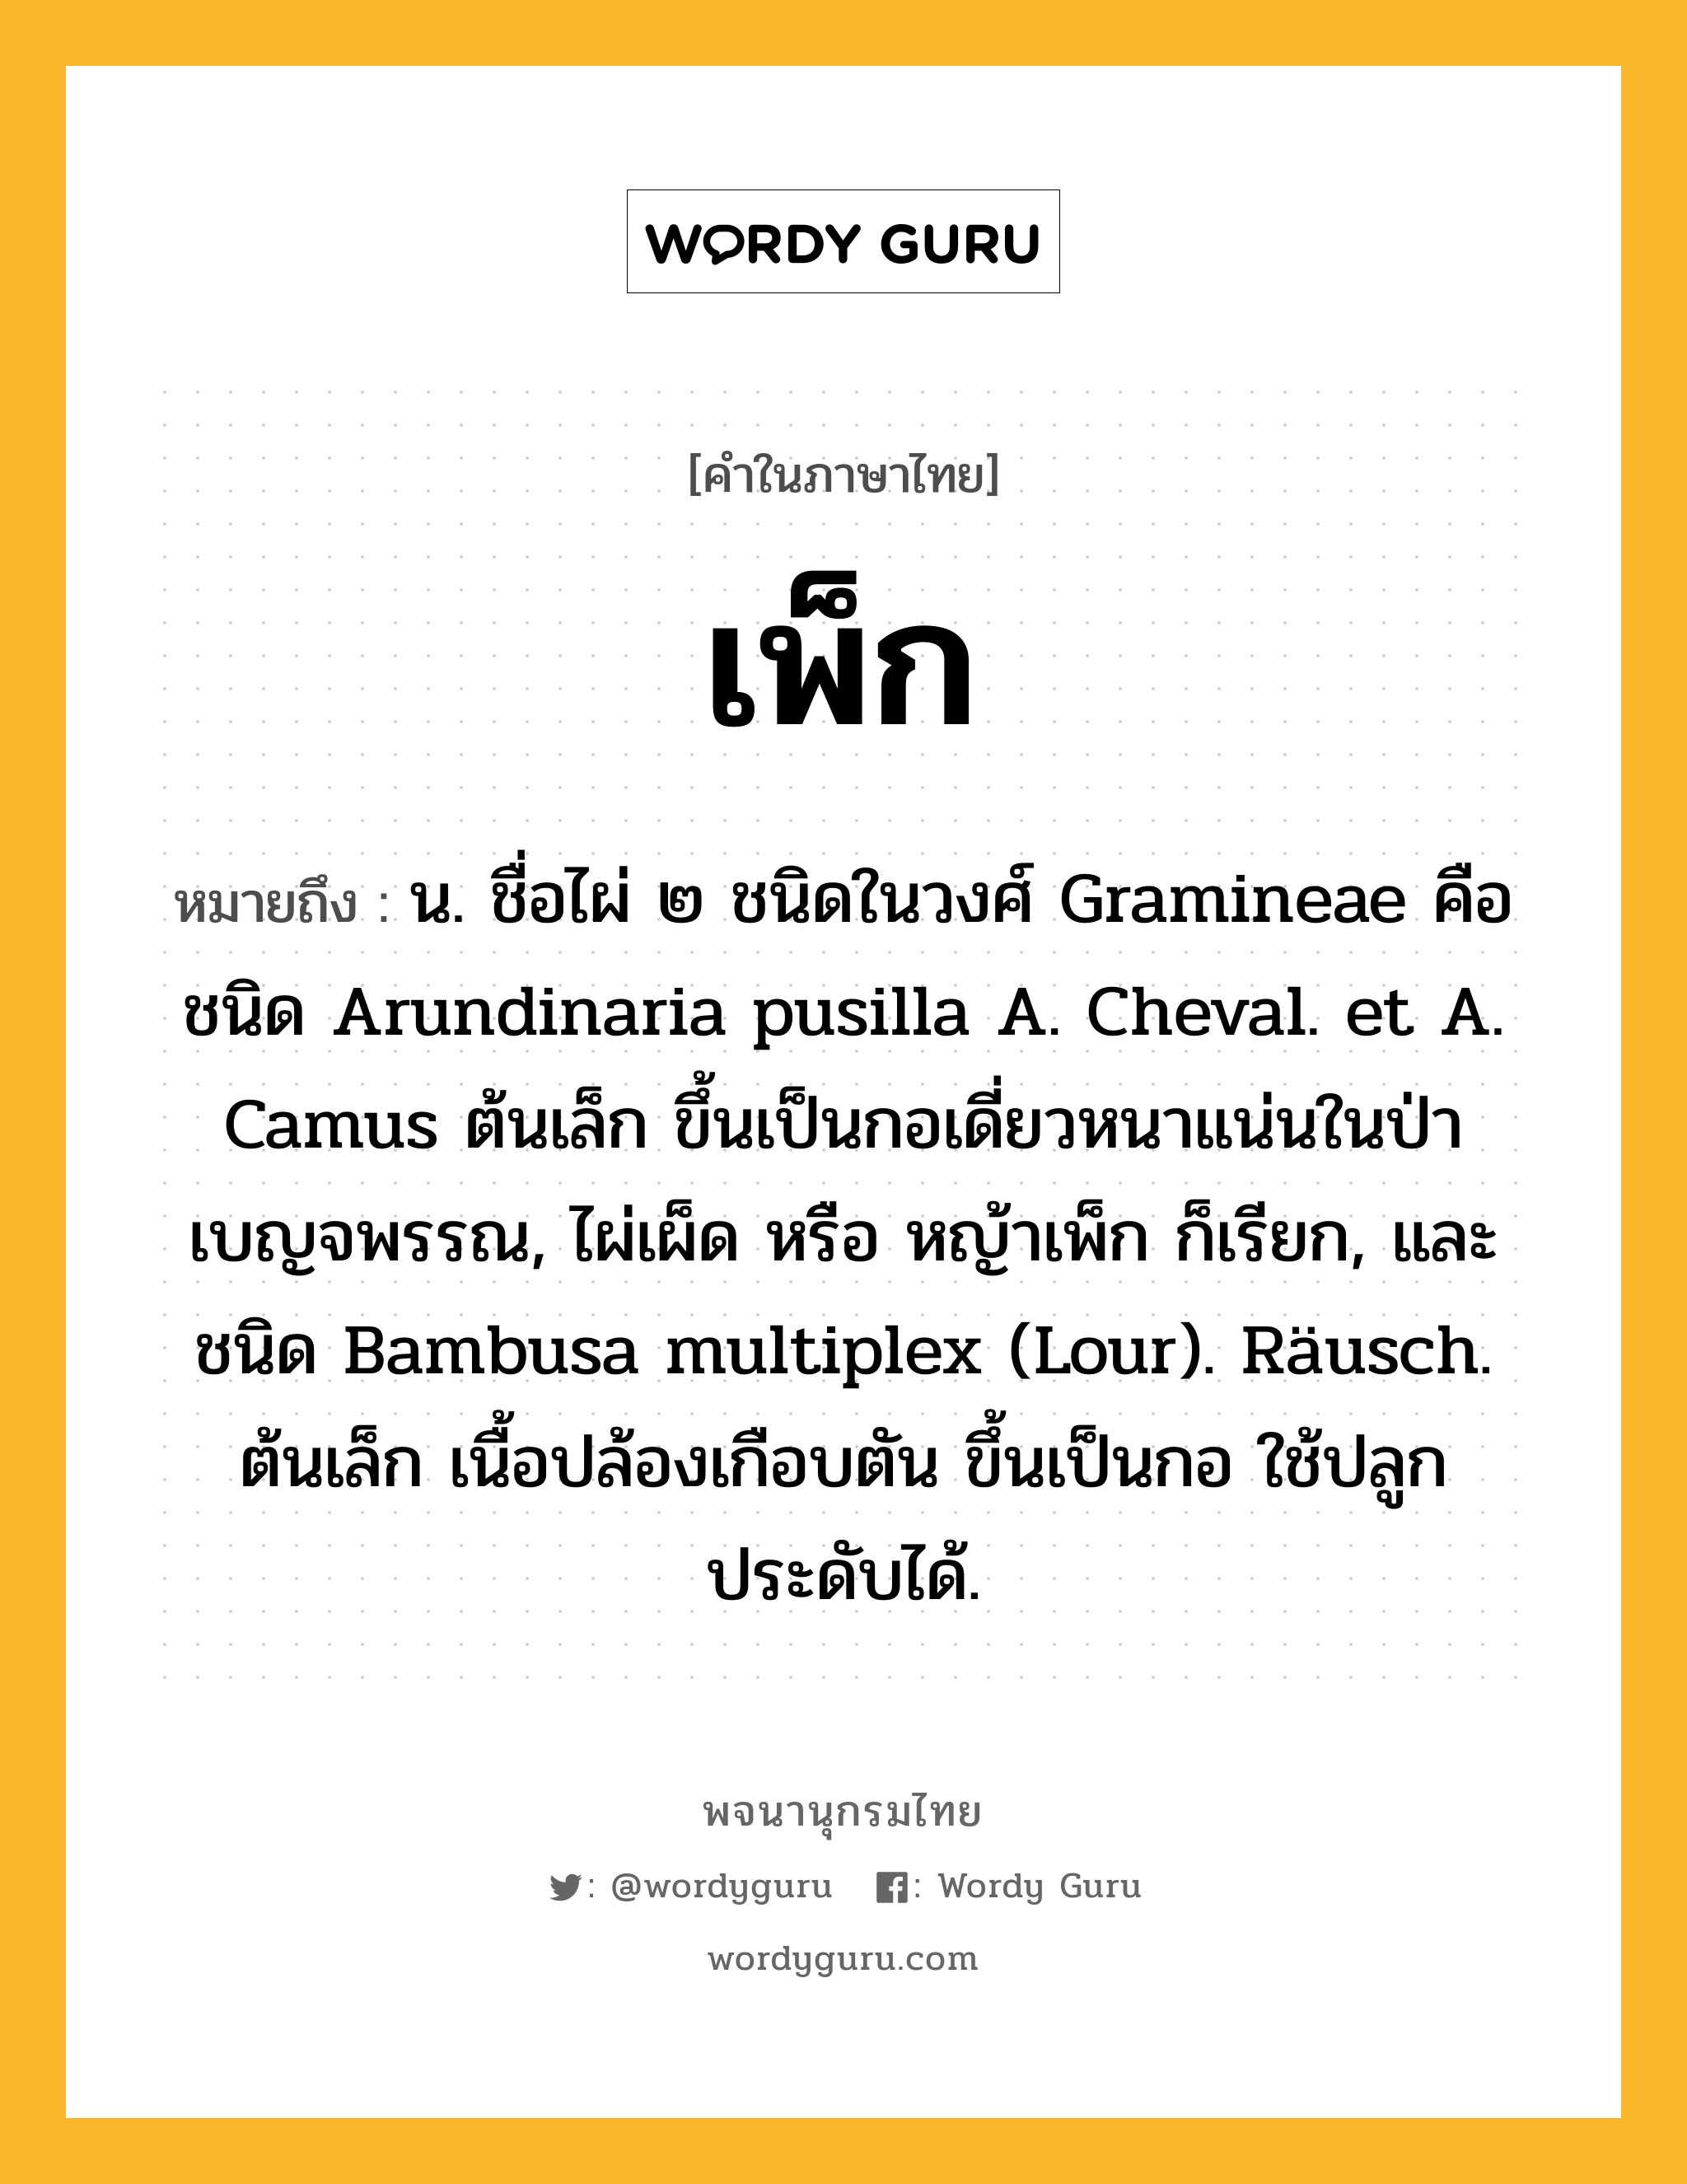 เพ็ก หมายถึงอะไร?, คำในภาษาไทย เพ็ก หมายถึง น. ชื่อไผ่ ๒ ชนิดในวงศ์ Gramineae คือ ชนิด Arundinaria pusilla A. Cheval. et A. Camus ต้นเล็ก ขึ้นเป็นกอเดี่ยวหนาแน่นในป่าเบญจพรรณ, ไผ่เผ็ด หรือ หญ้าเพ็ก ก็เรียก, และชนิด Bambusa multiplex (Lour). Räusch. ต้นเล็ก เนื้อปล้องเกือบตัน ขึ้นเป็นกอ ใช้ปลูกประดับได้.